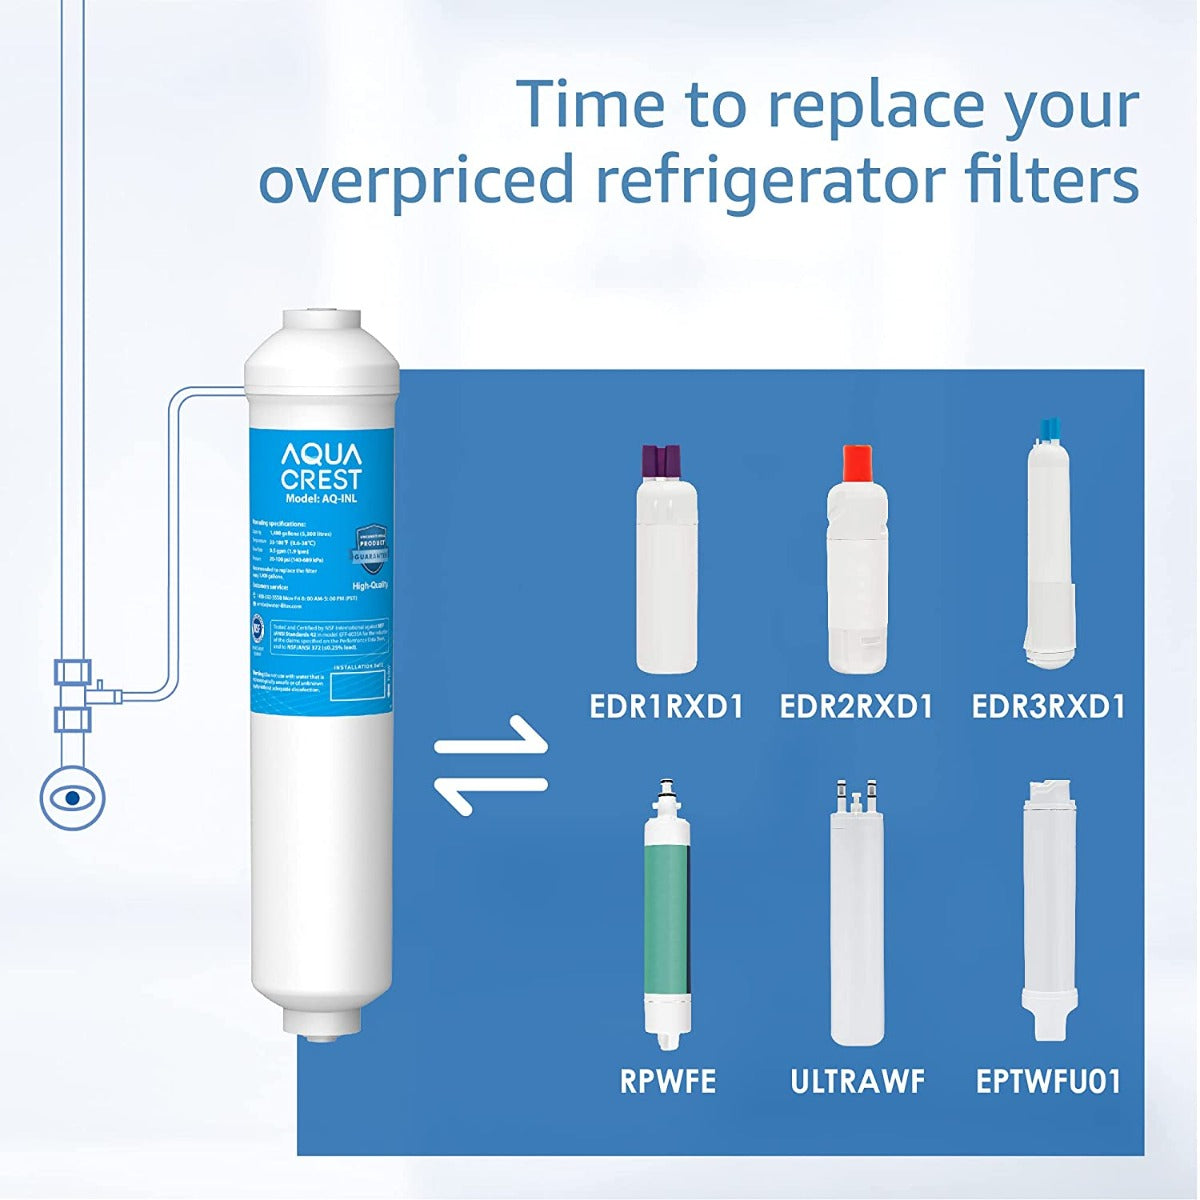 AQUACREST 5KDC Inline Water Filter for Under Sink, Ice Maker